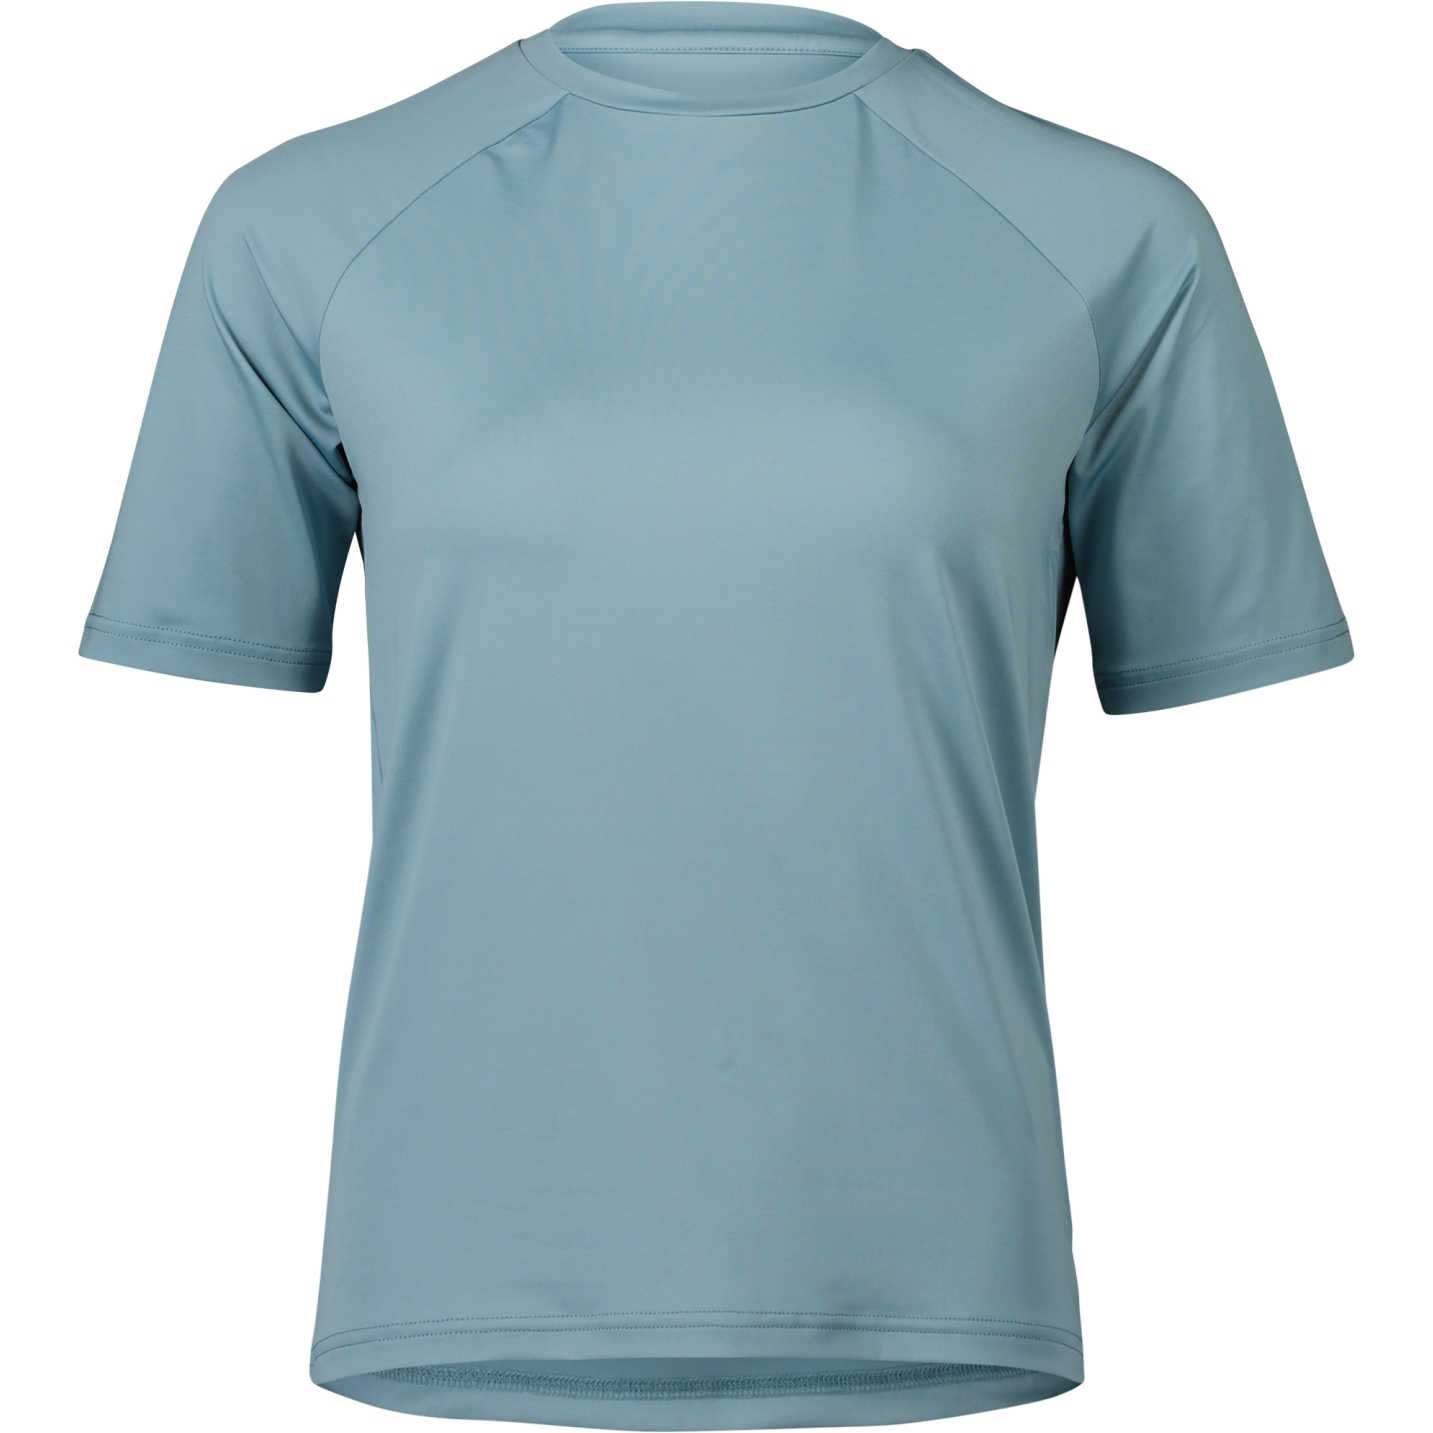 Produktbild von POC Reform Enduro Light T-Shirt Damen - 1663 Mineral Blue